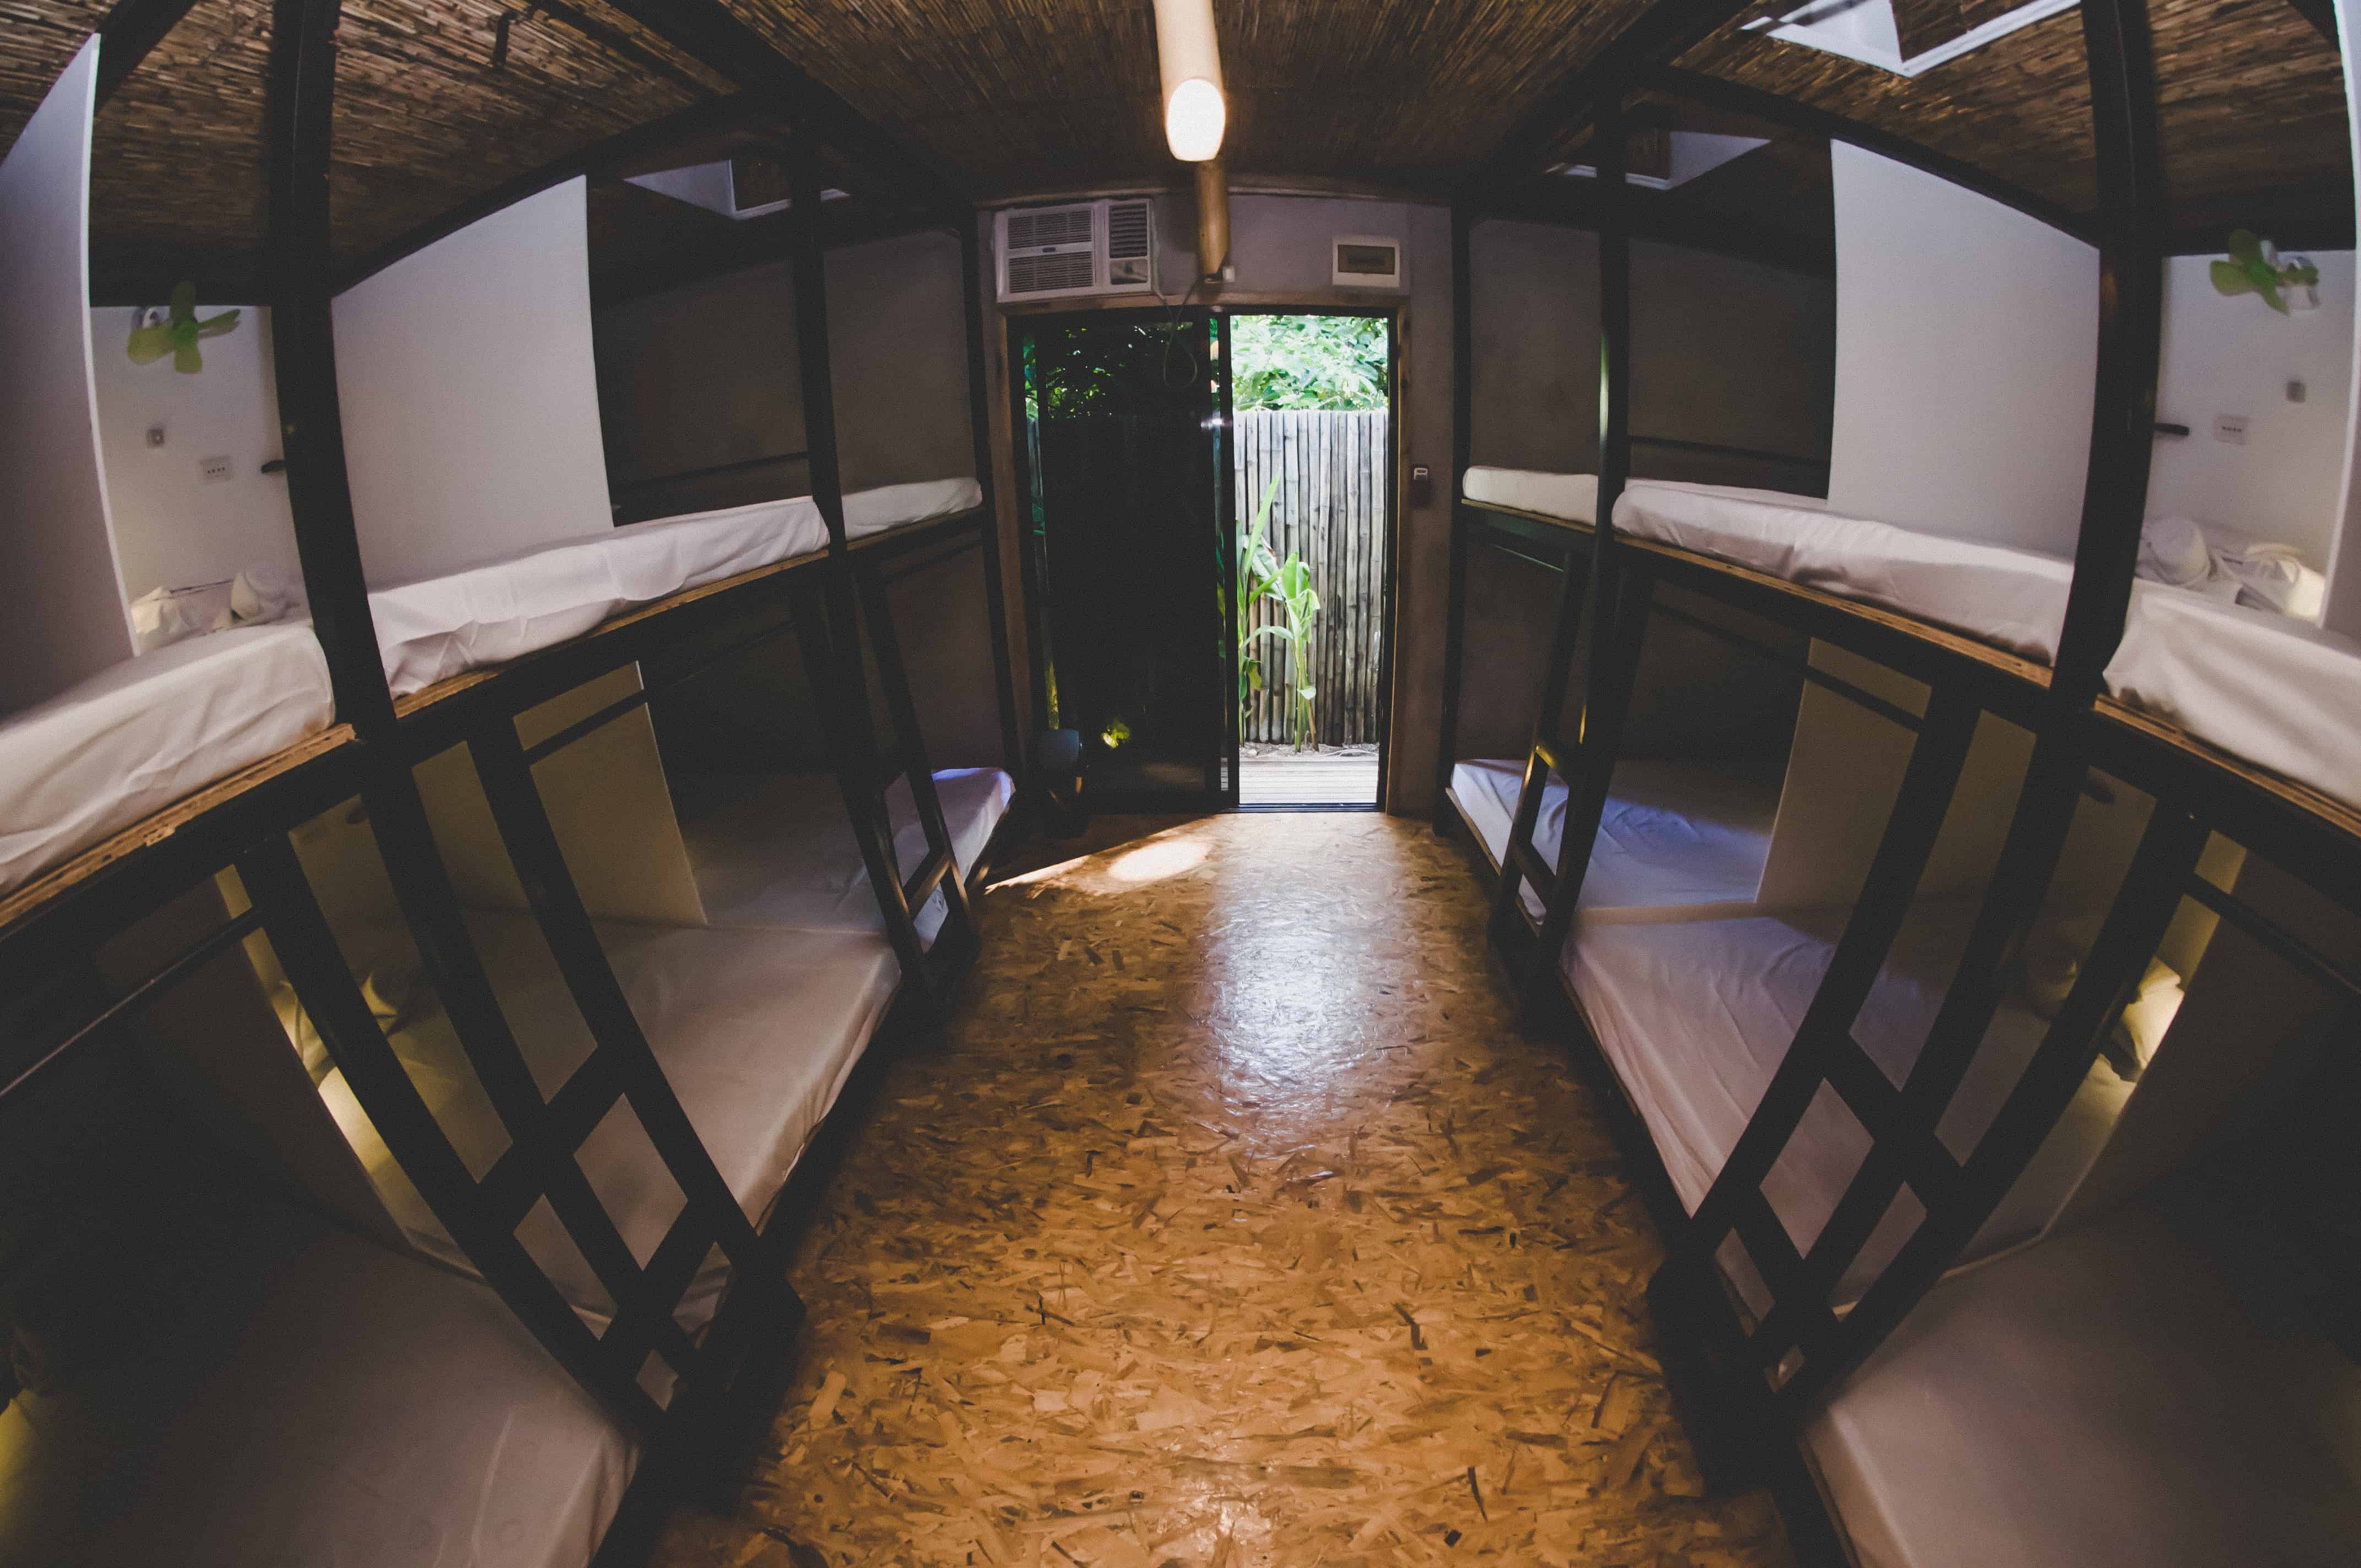 12-Bed Mixed Dorm